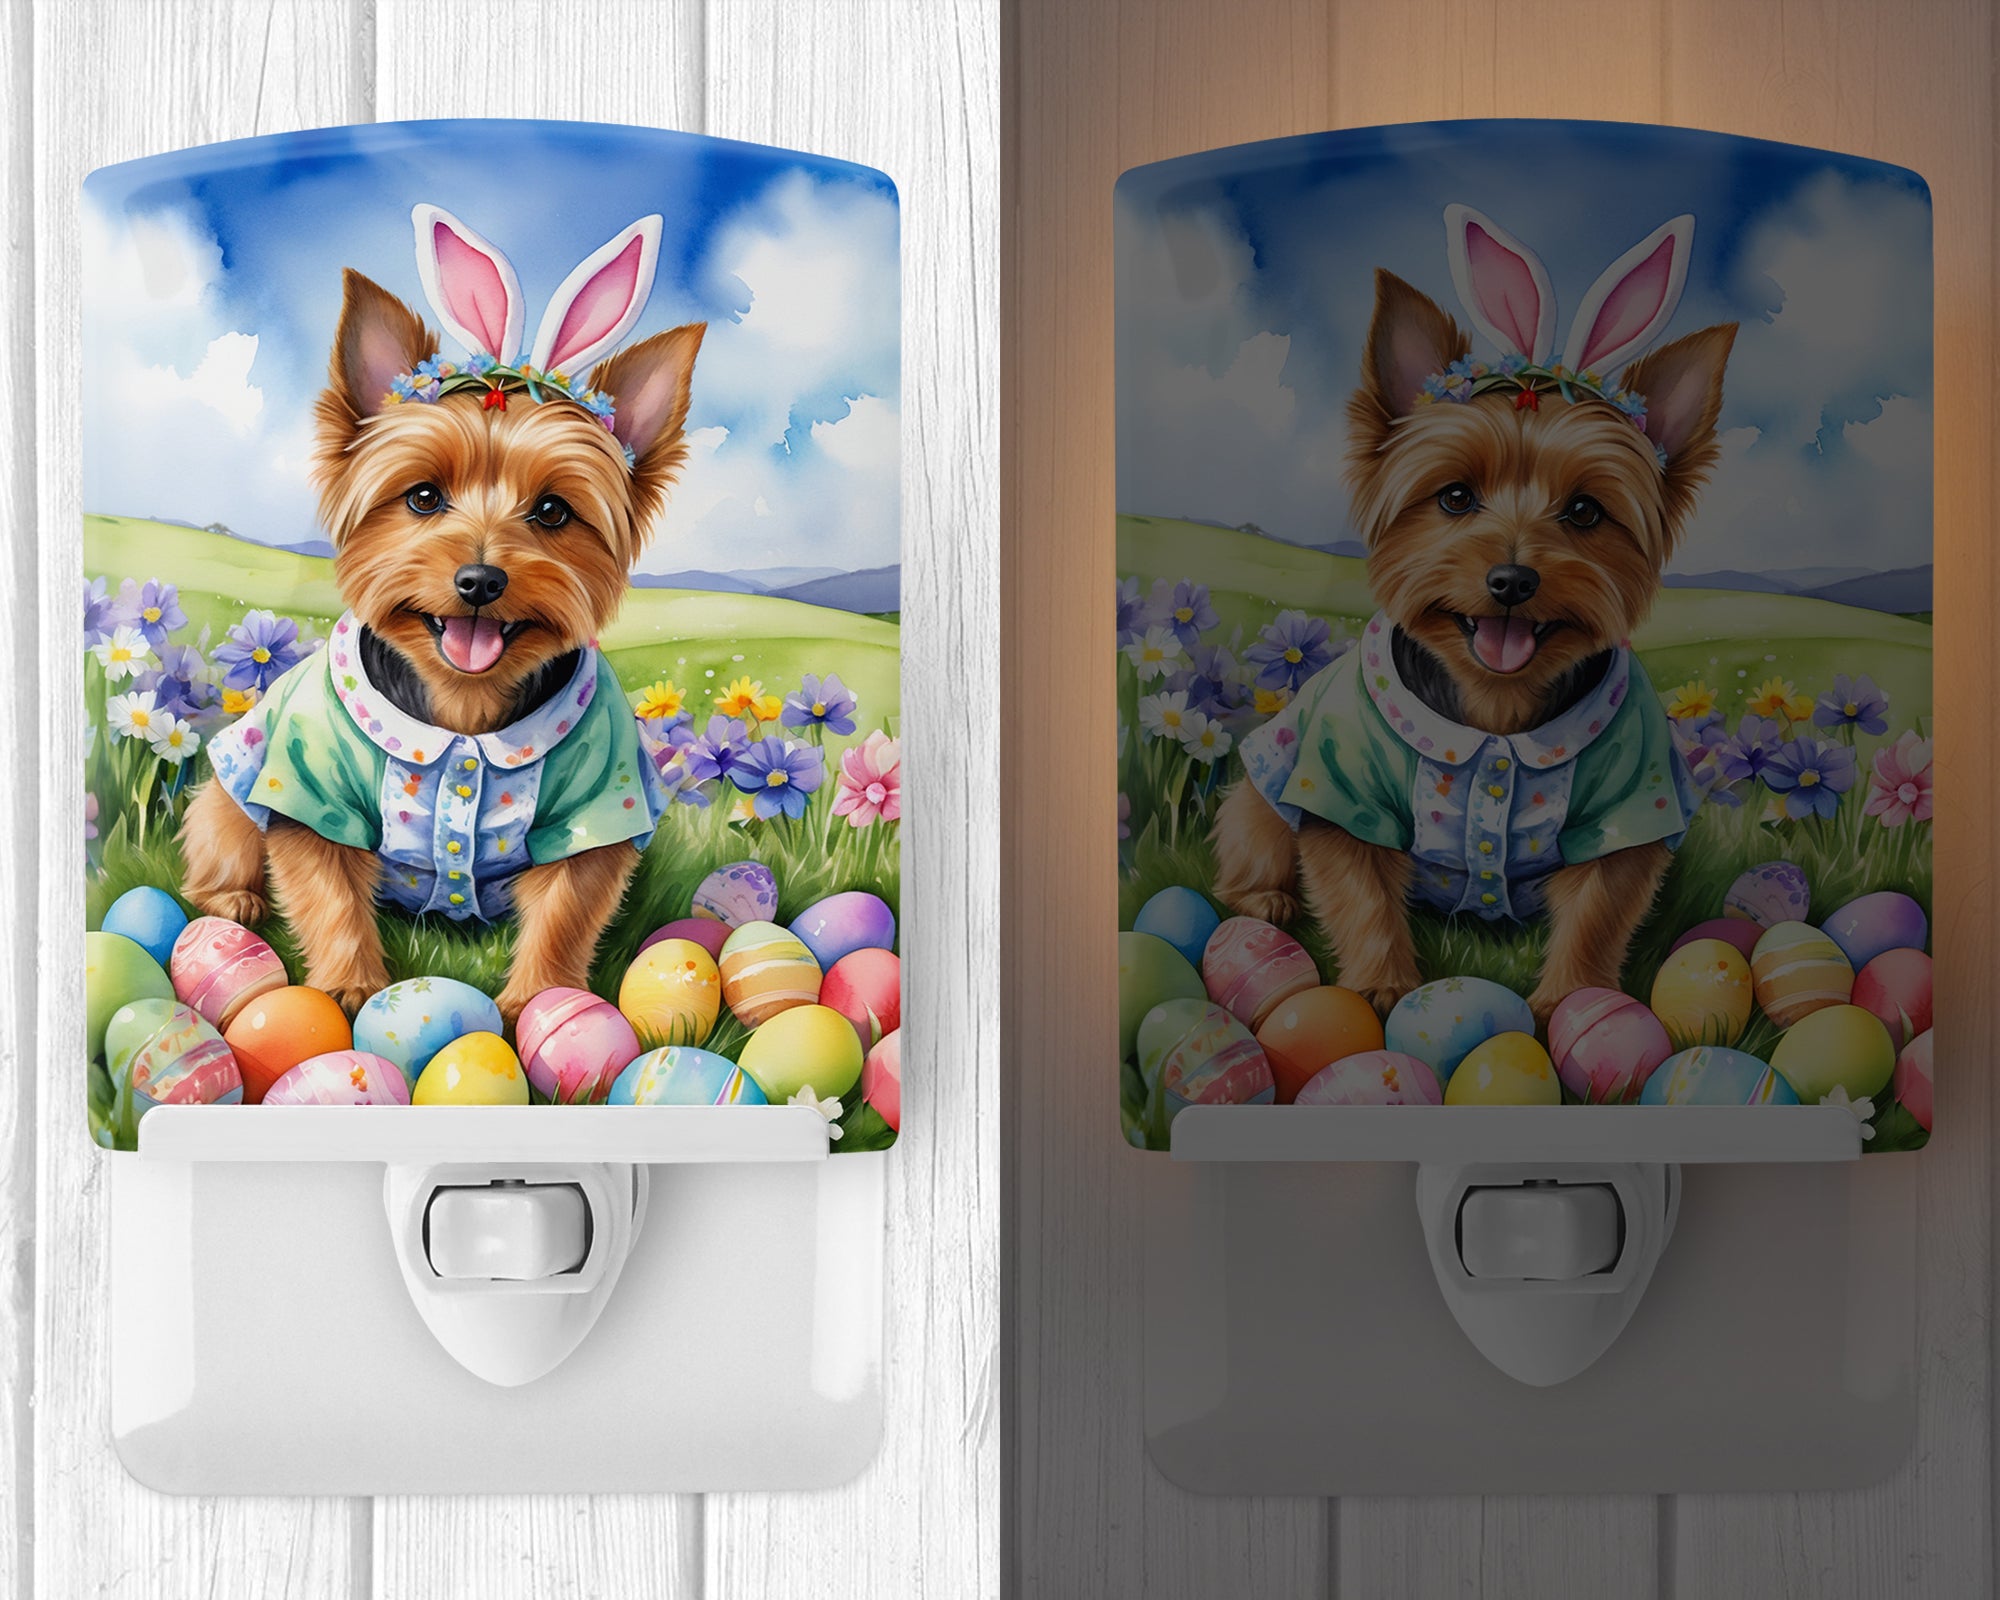 Buy this Australian Terrier Easter Egg Hunt Ceramic Night Light